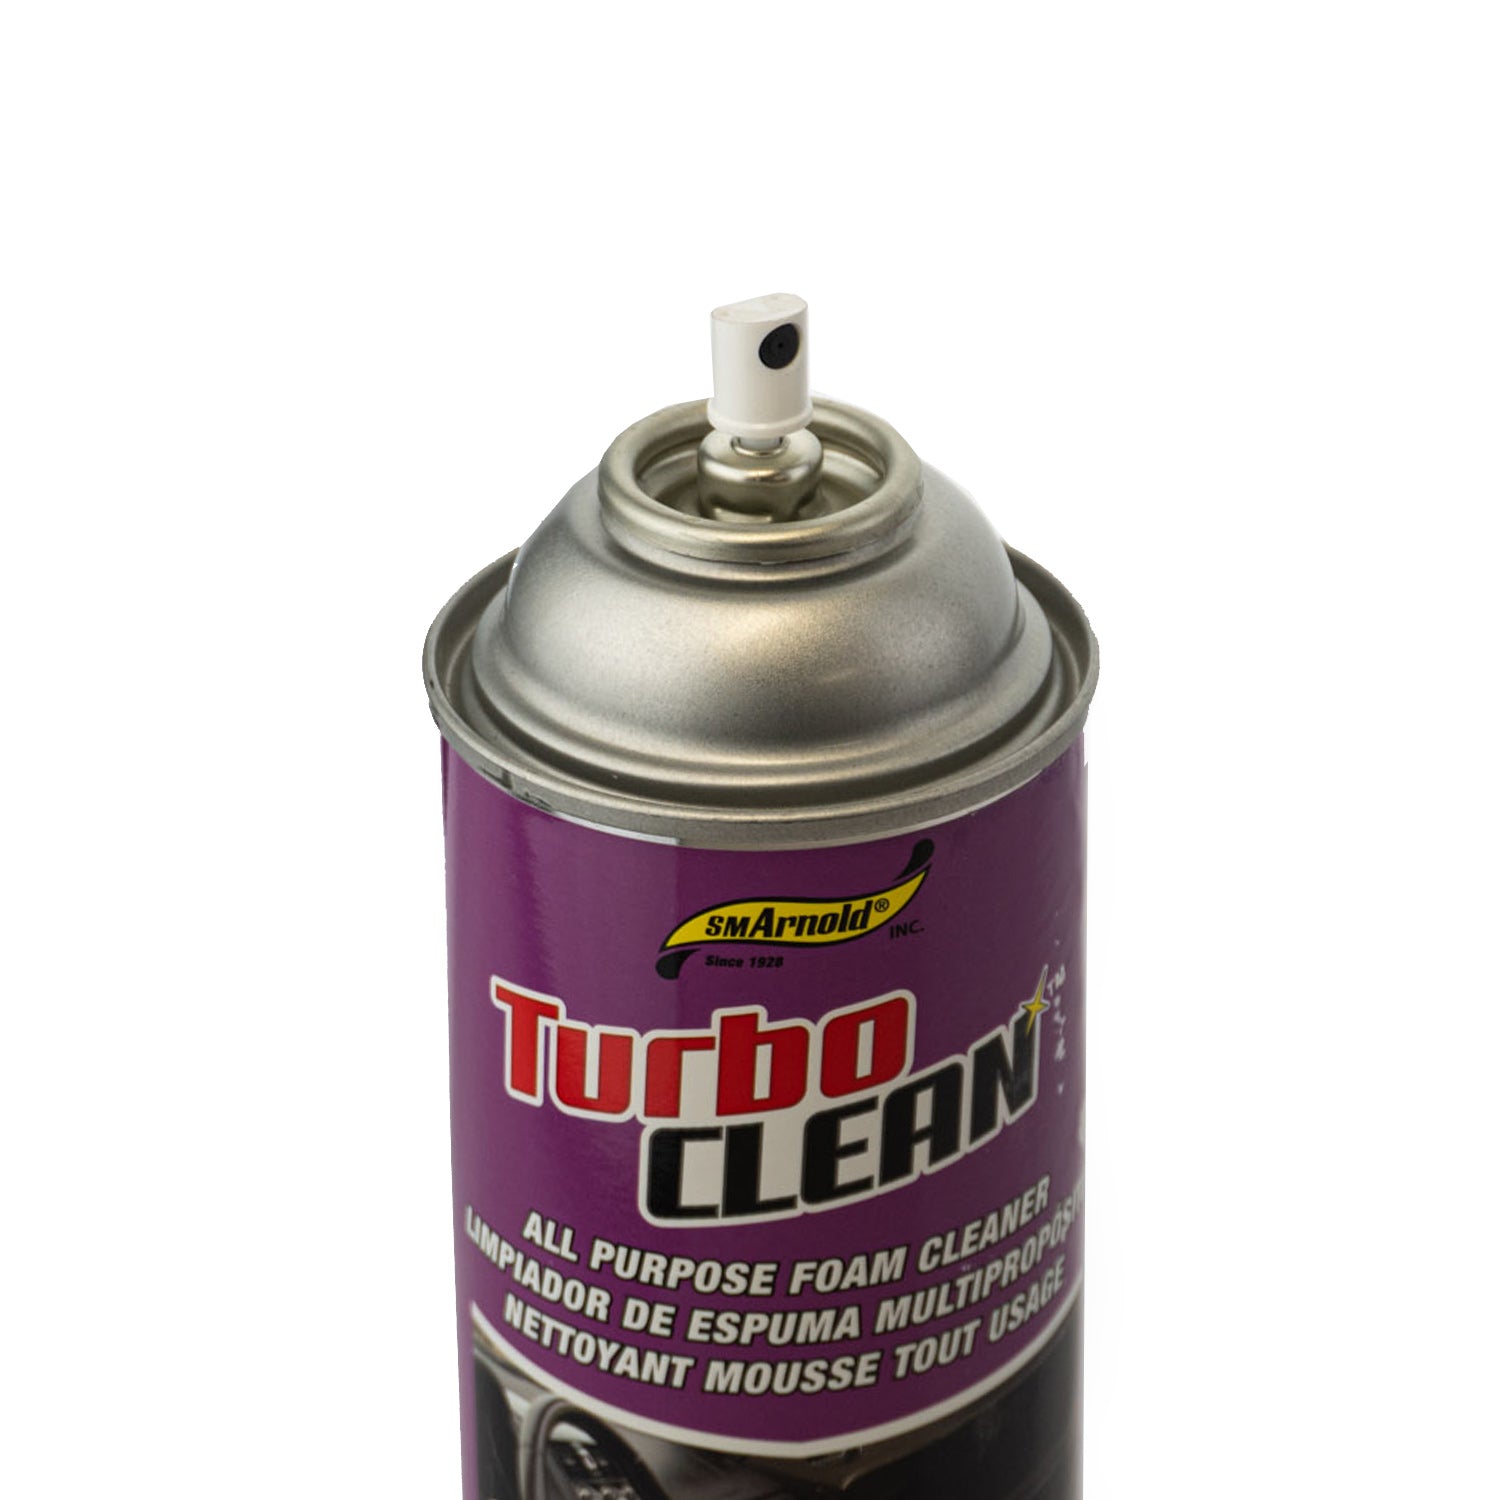 turbo-clean-foaming-aerosol-cleaner-tip